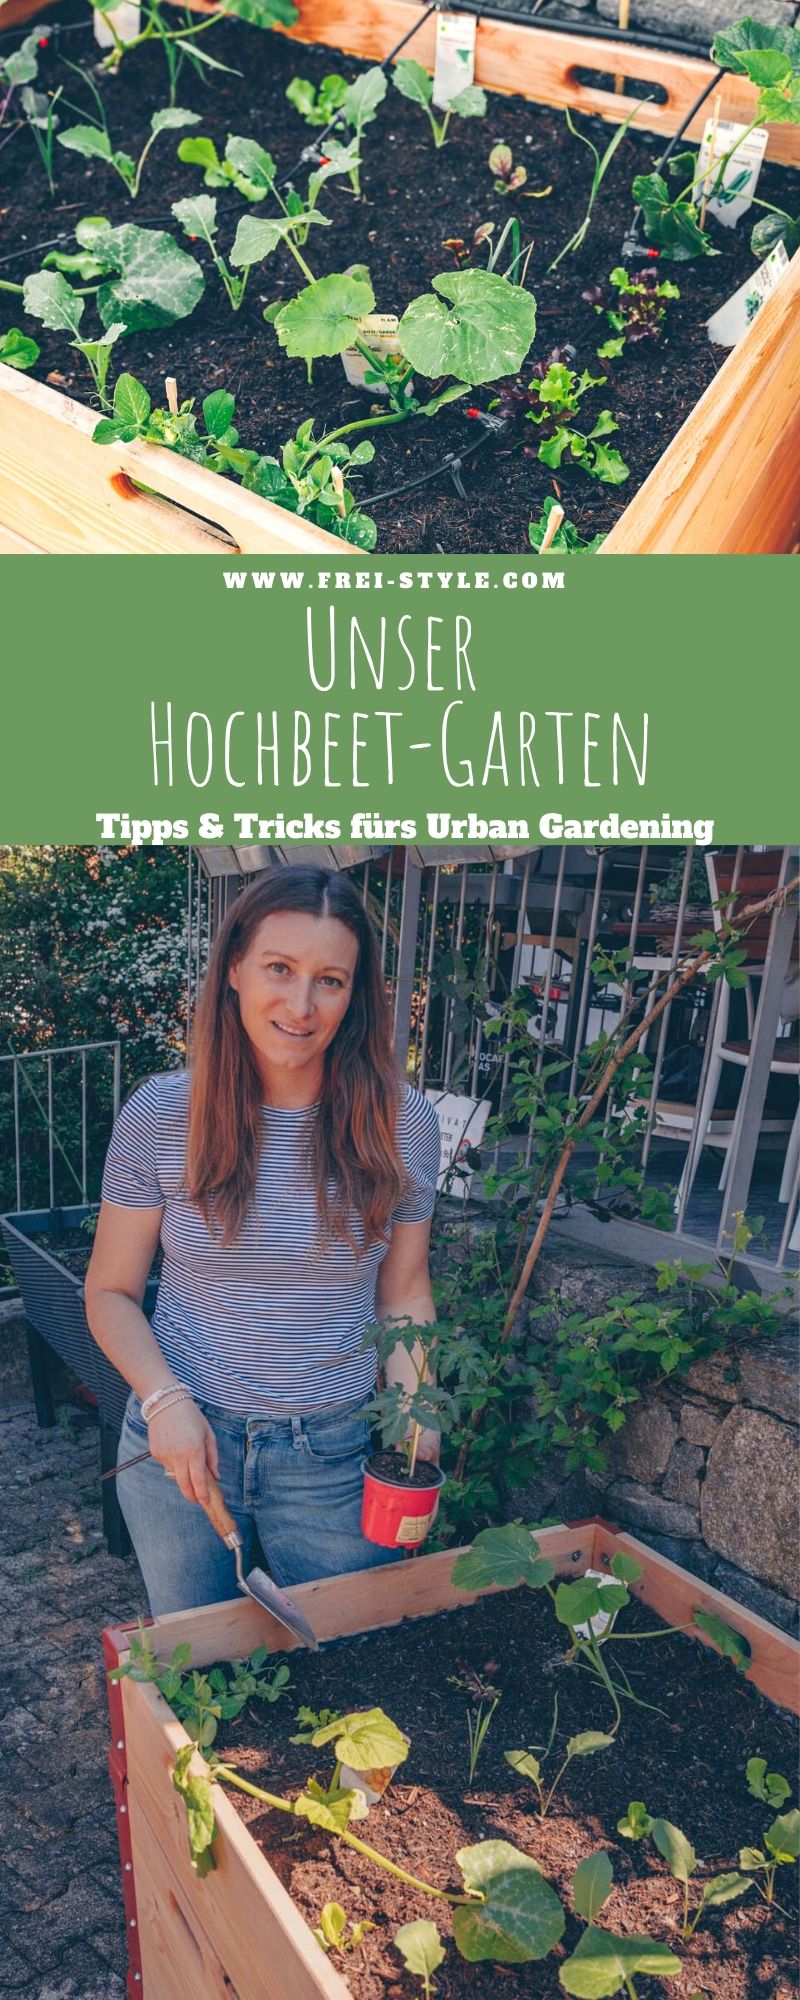 Unser Hochbeetgarten - Tipps und Tricks fürs urbane Gärtnern